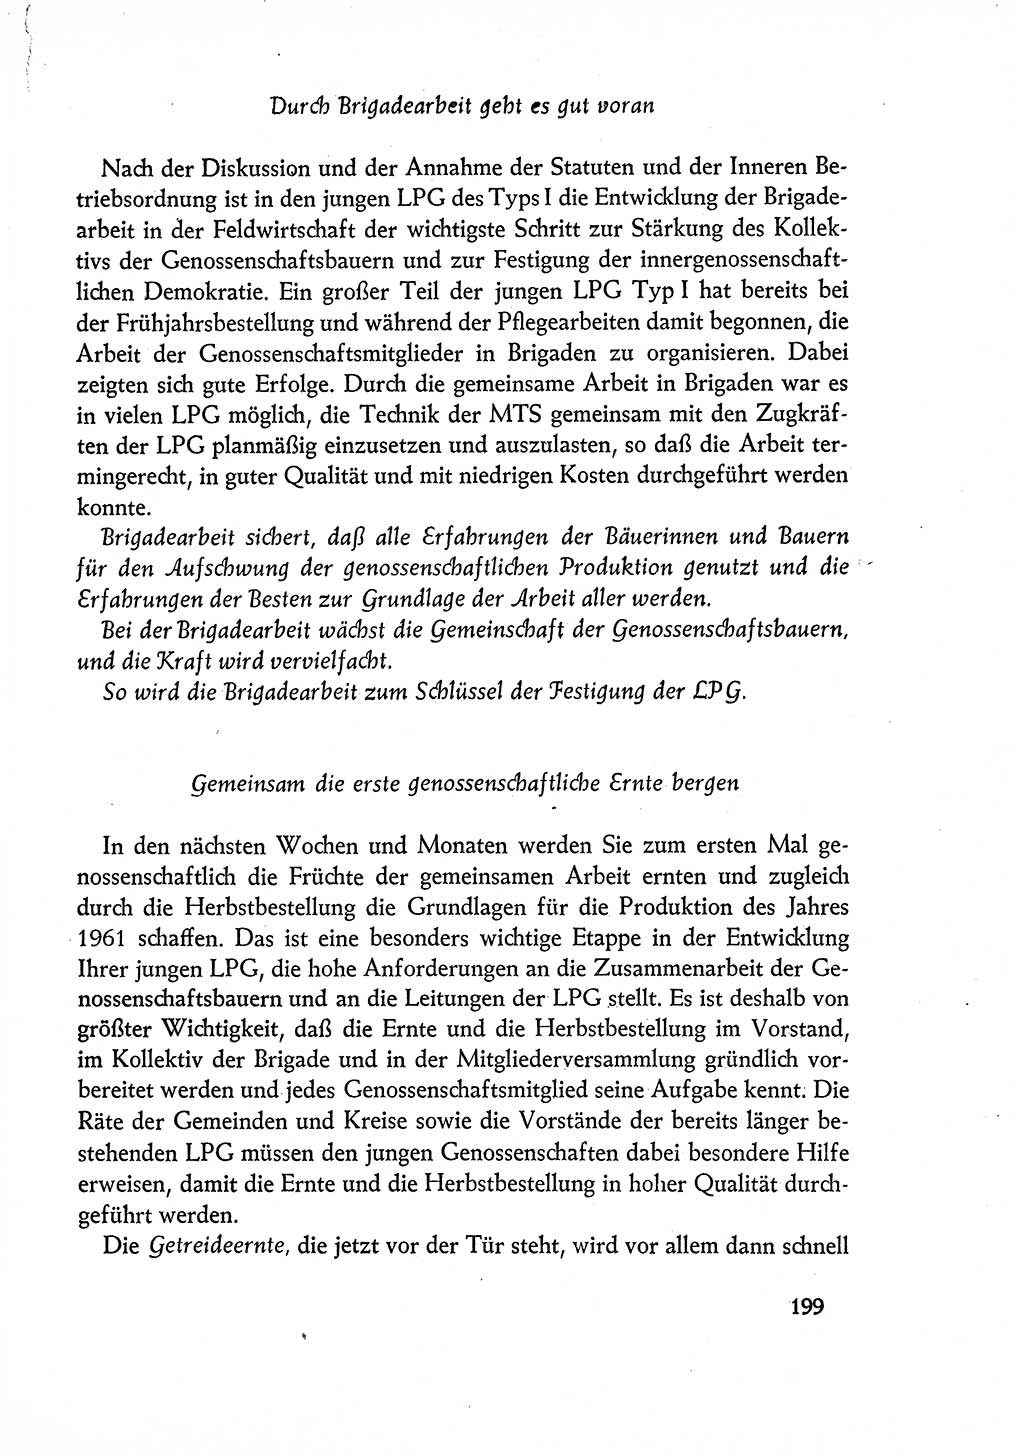 Dokumente der Sozialistischen Einheitspartei Deutschlands (SED) [Deutsche Demokratische Republik (DDR)] 1960-1961, Seite 199 (Dok. SED DDR 1960-1961, S. 199)